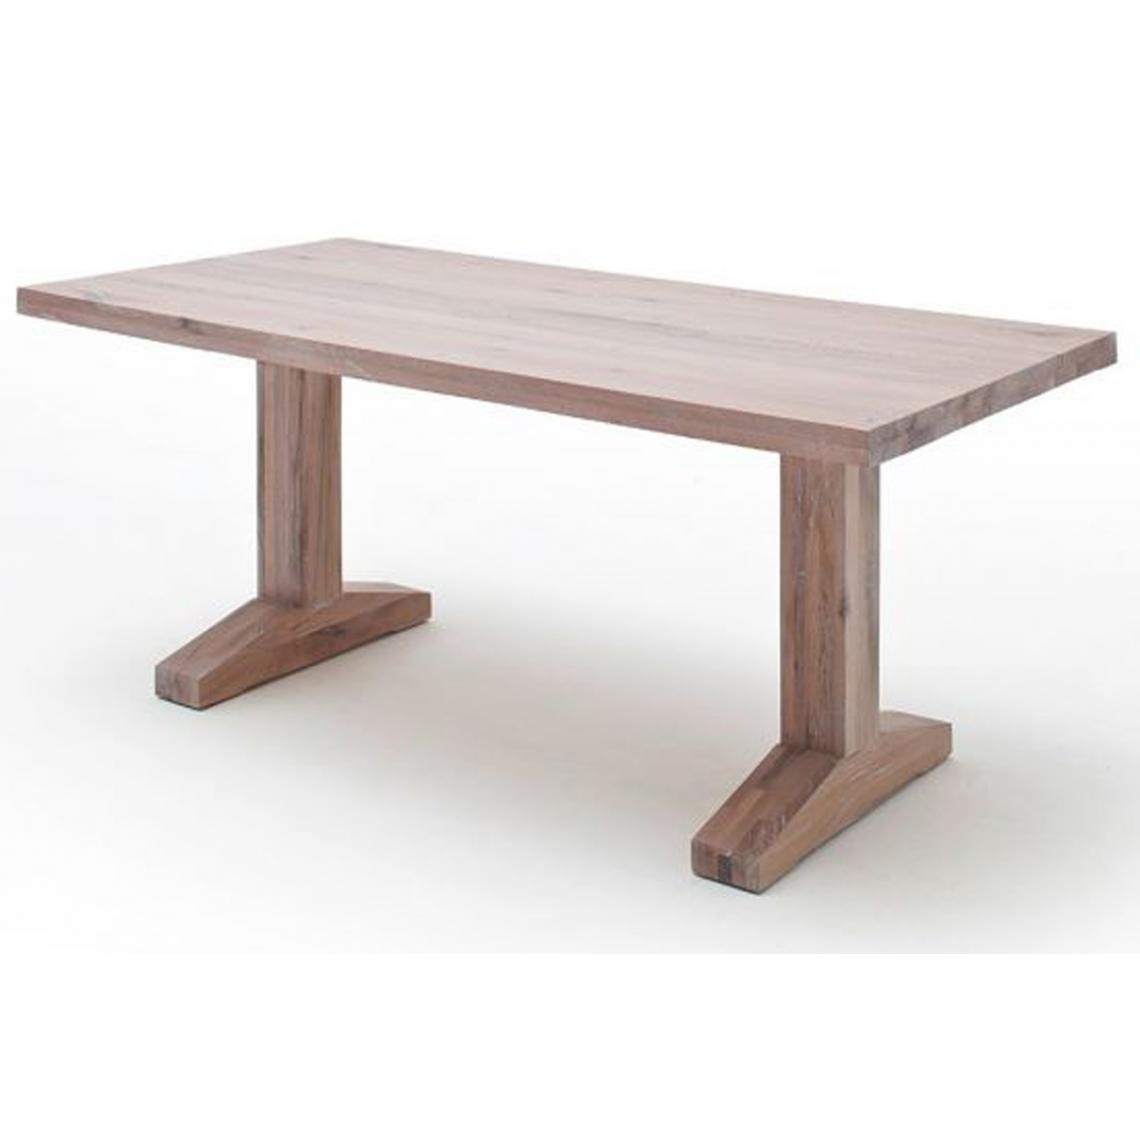 Pegane - Table à manger en chêne chaulé, laqué mat massif - L.180 x H.76 x P.90 cm - Tables à manger